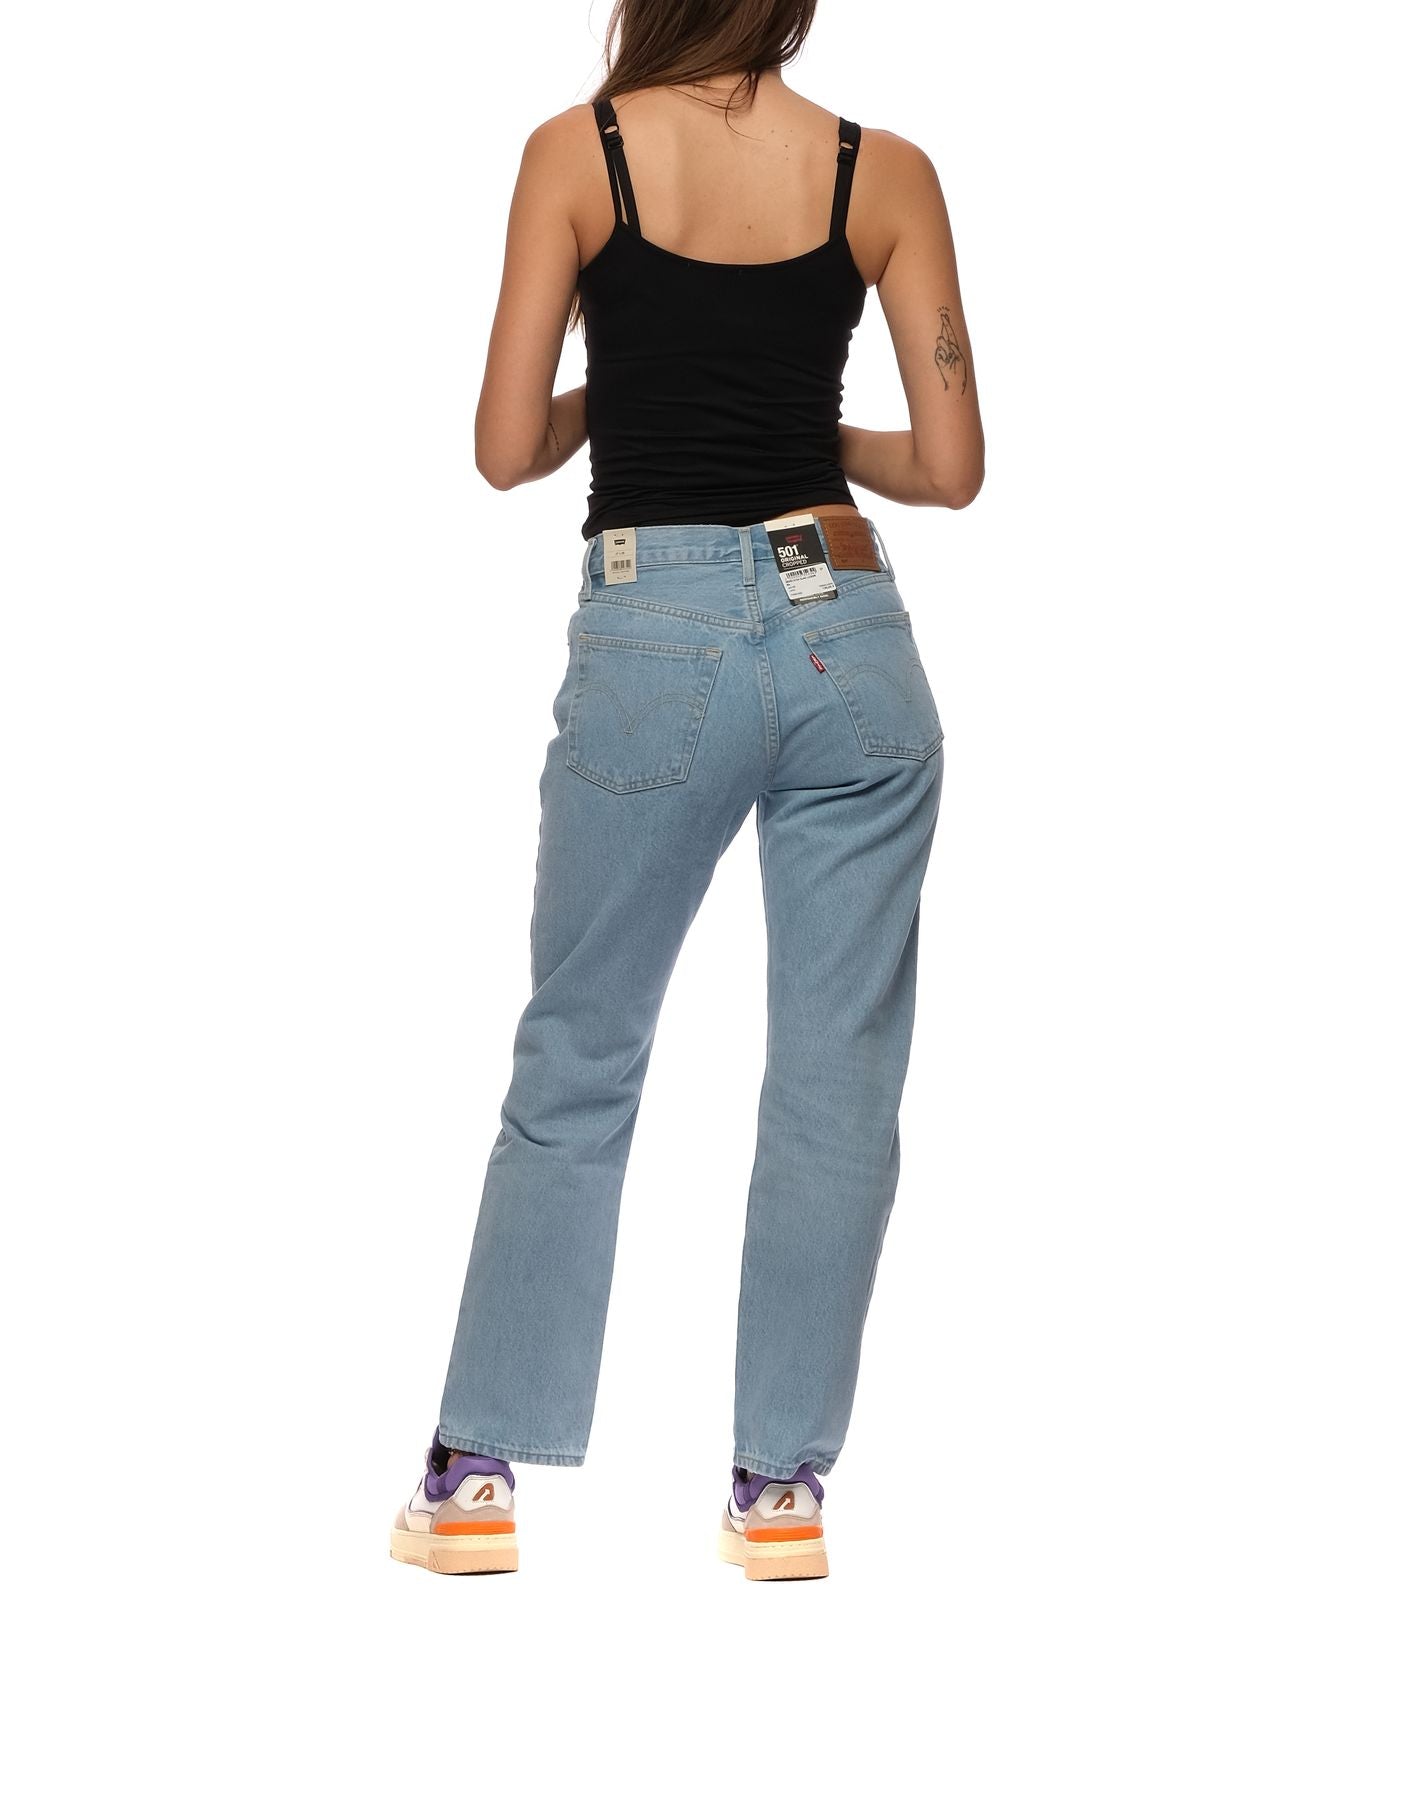 Jeans für Frau 36200 0124 Ojai Luxor Levi's